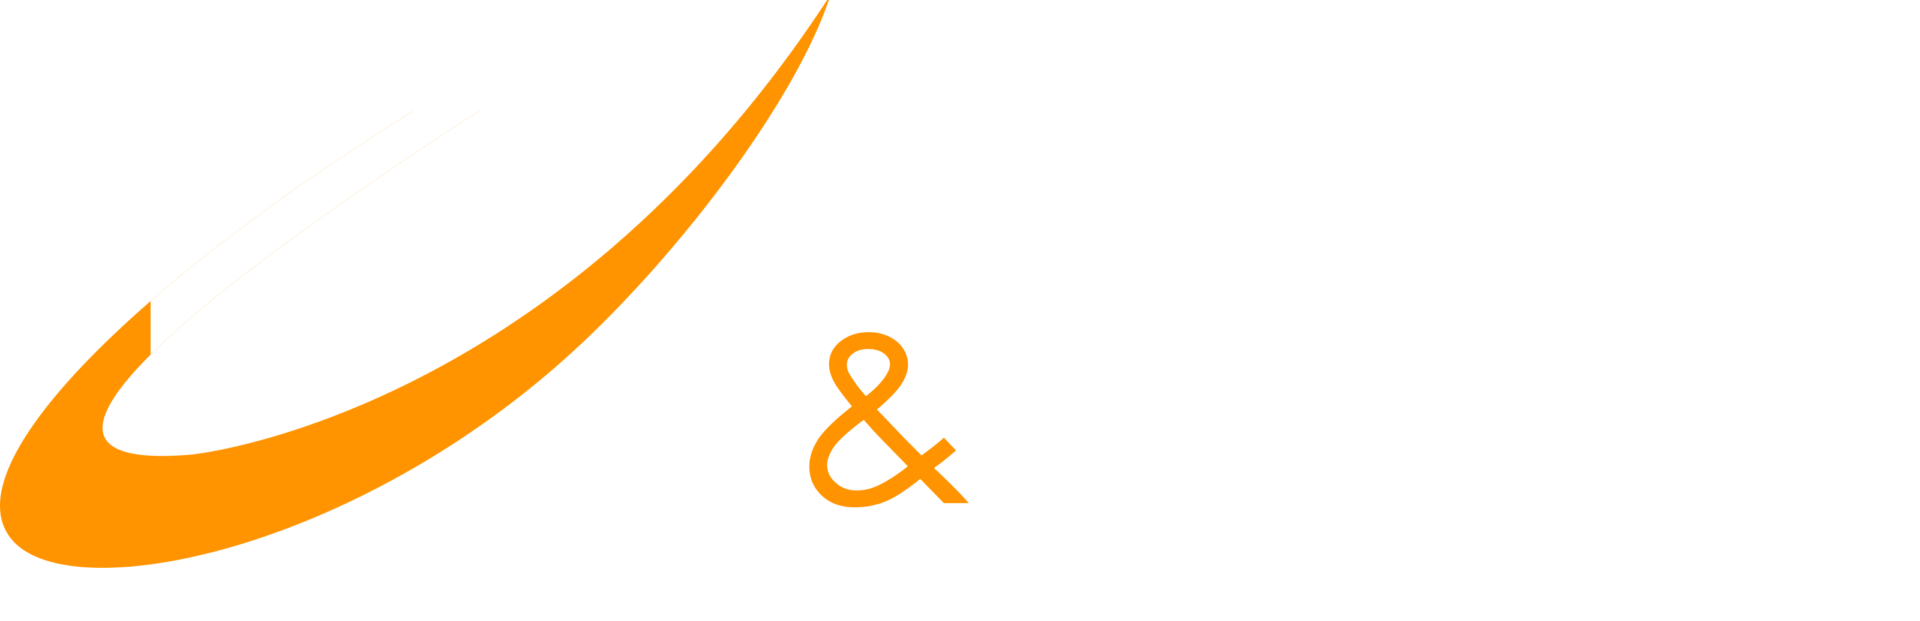 Brandão e Marmo Engenharia e Construções